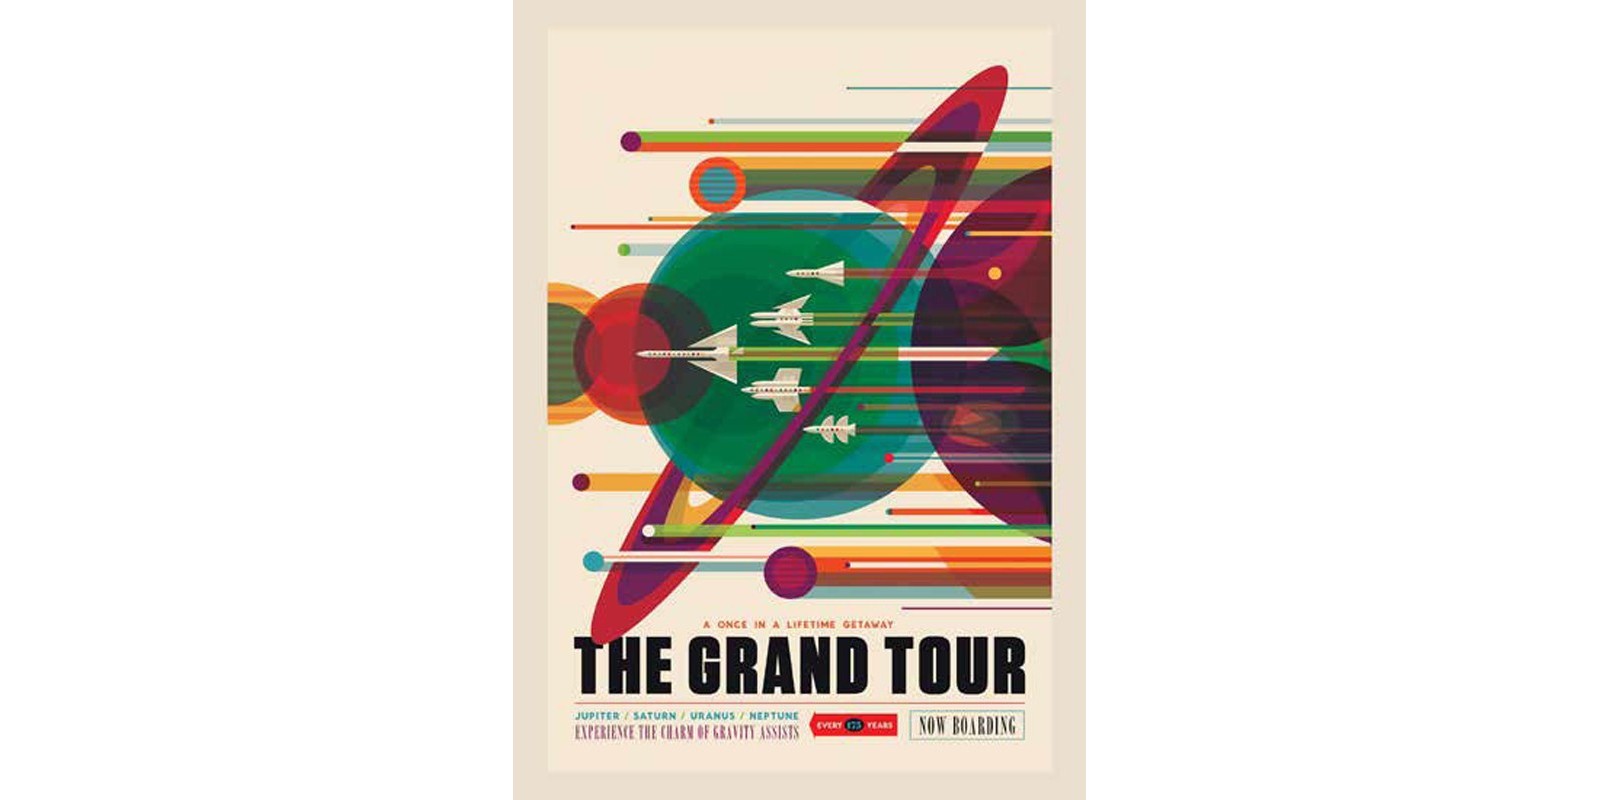 NASA - The Grand Tour